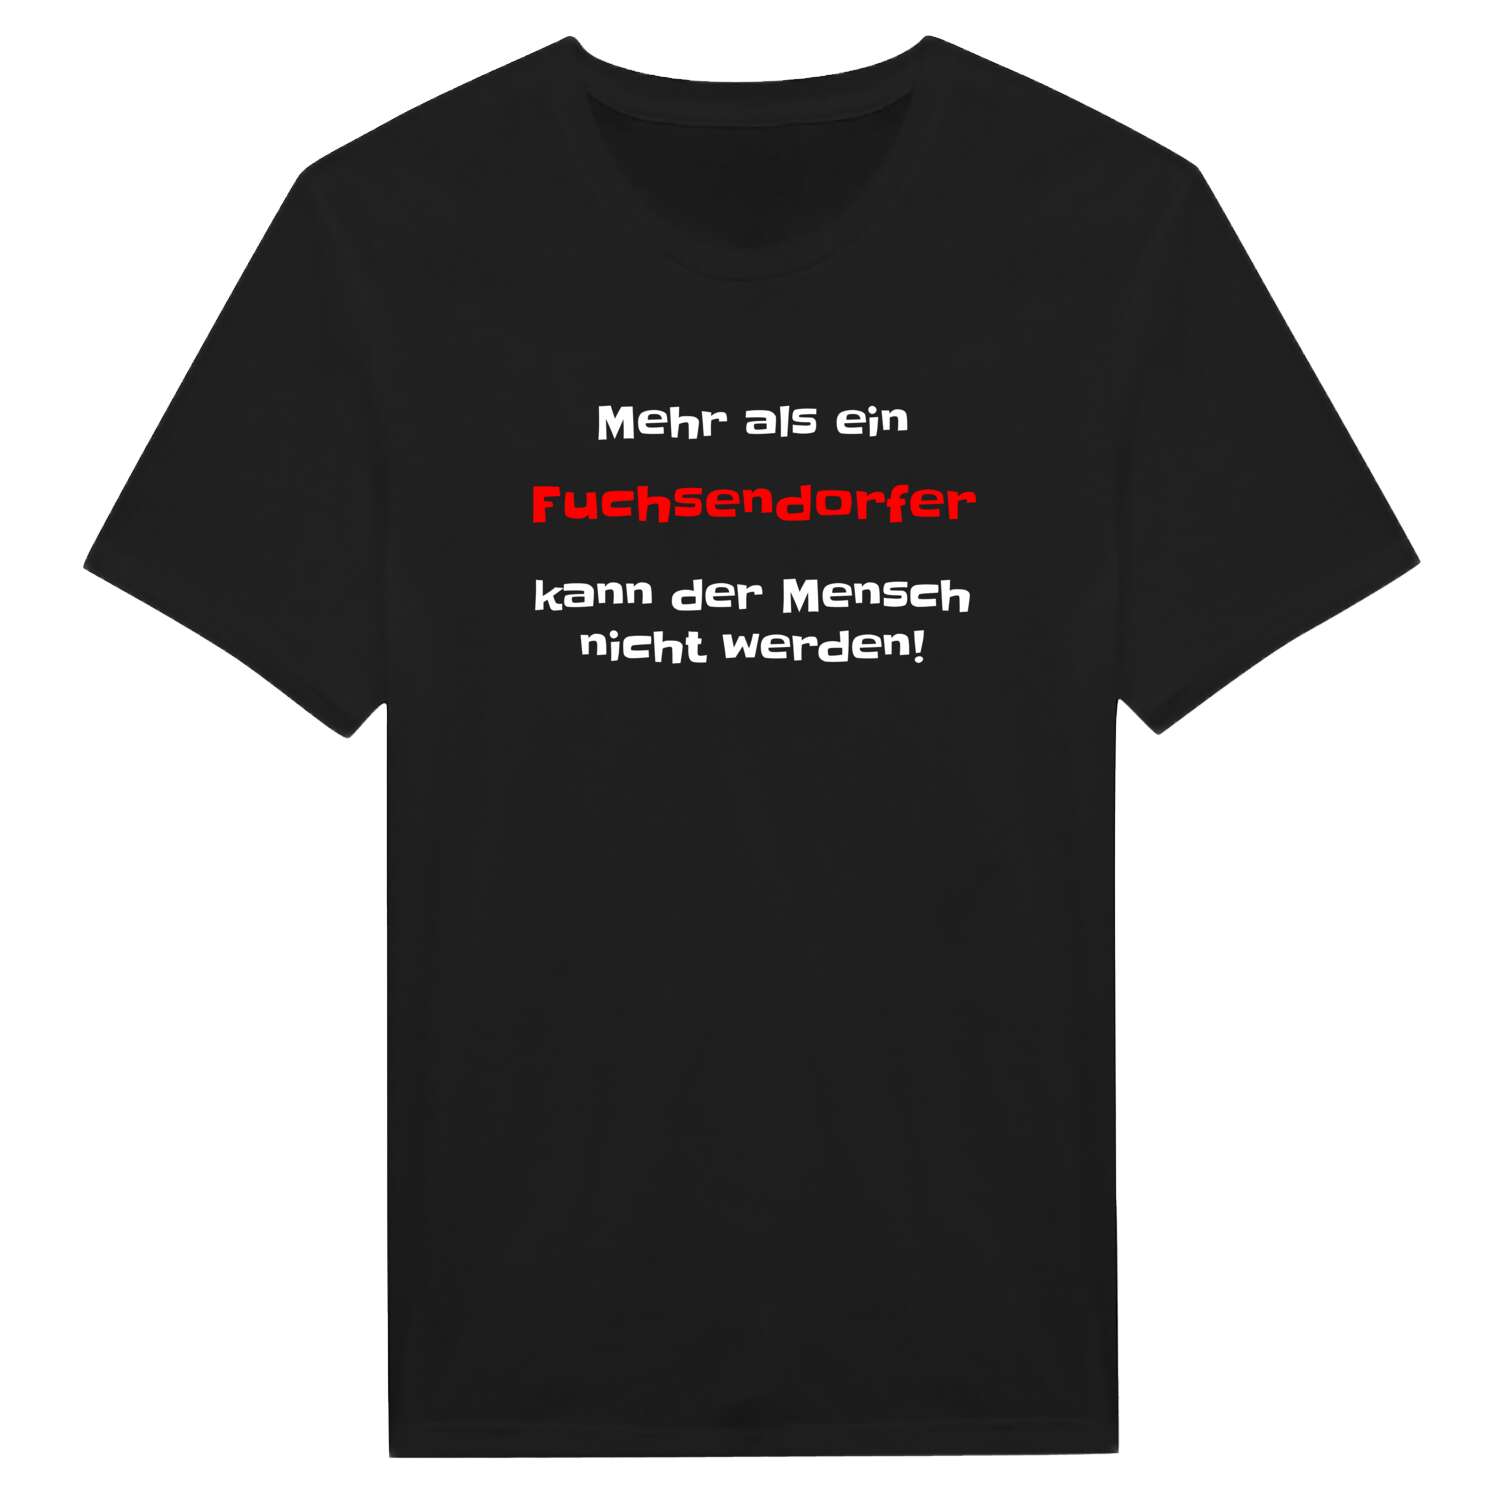 Fuchsendorf T-Shirt »Mehr als ein«